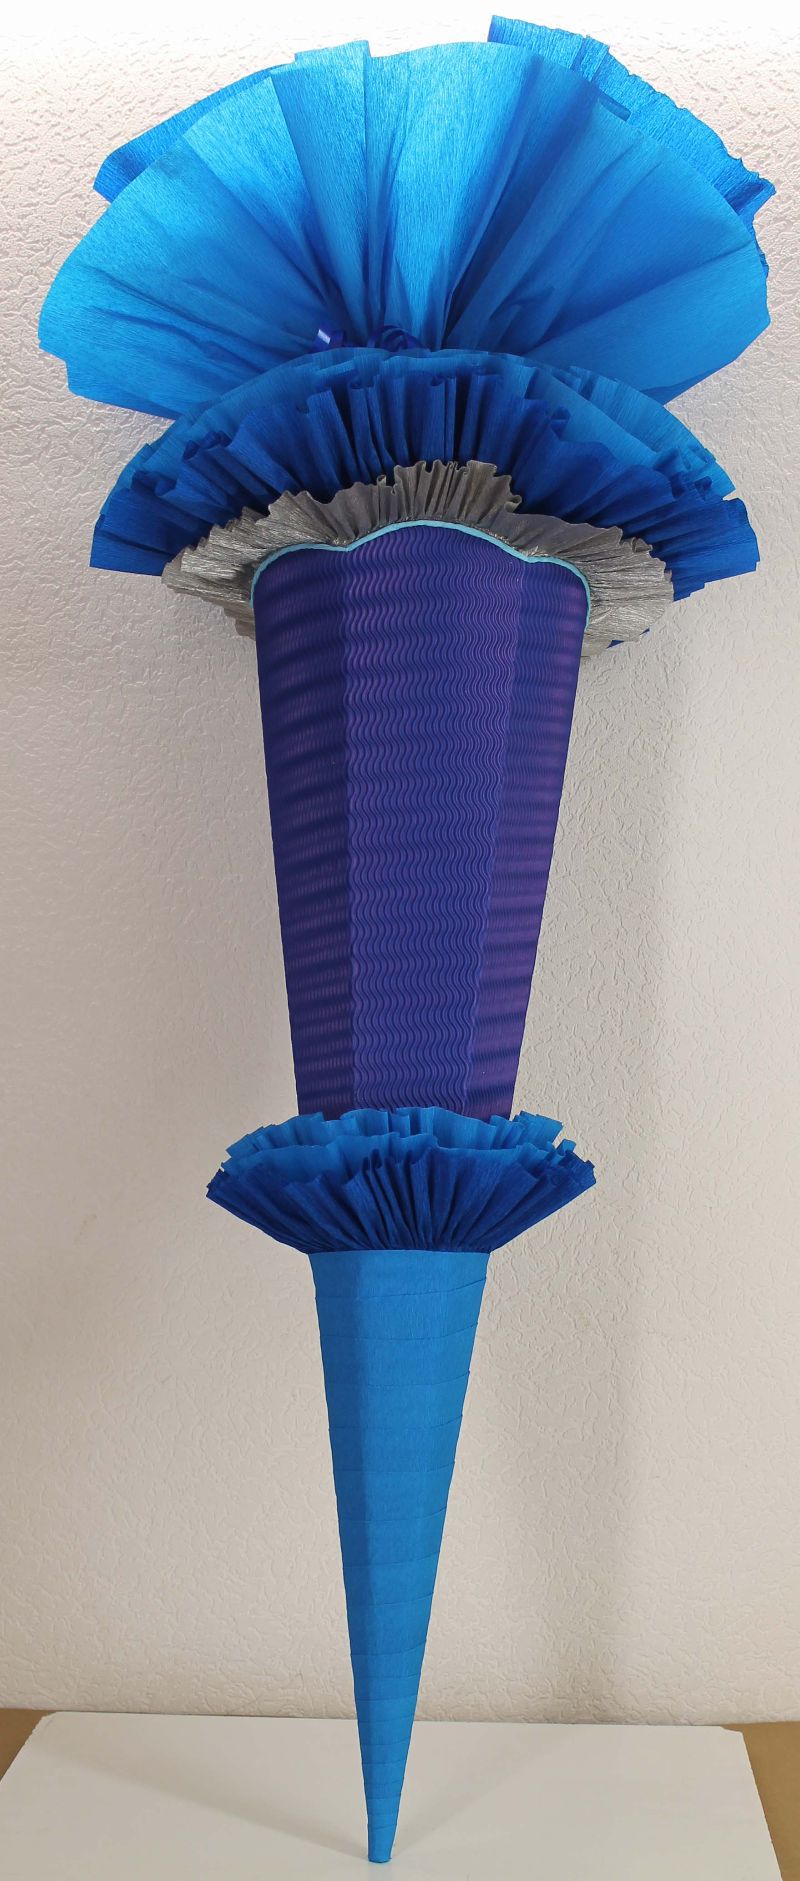  - Schultüte Zuckertüte Rohling zum selbst verzieren Rohling 70 75 80 85 90 100 cm / 1m für Jungen HANDARBEIT blau dunkelblau silber